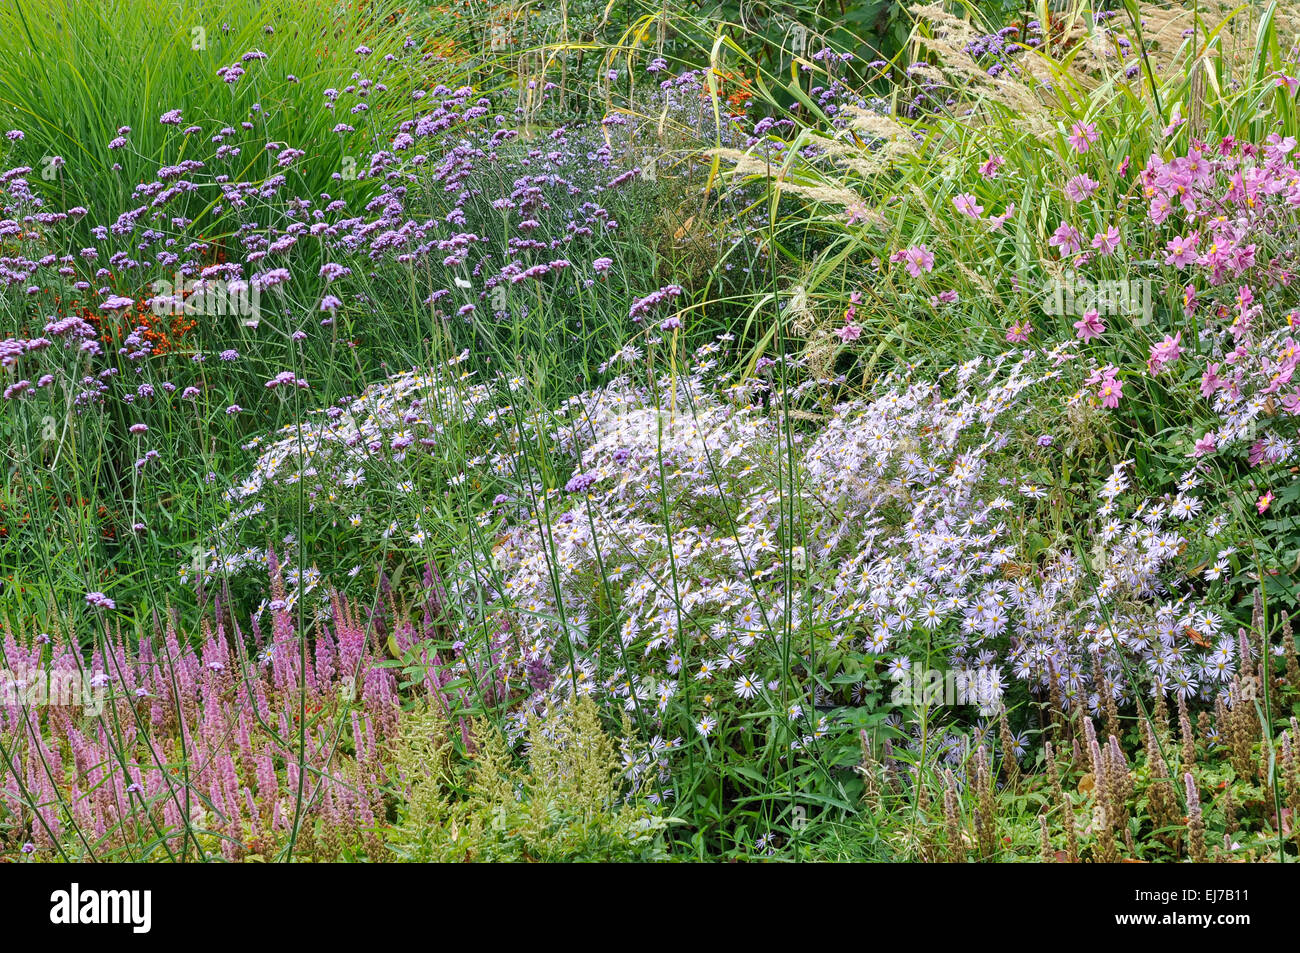 Spätsommer Blumenränder mit einem Mix aus Farben und Pflanzen unterschiedlicher Höhe. Enthält Verbena, Asters und japanische Anemonen. Stockfoto